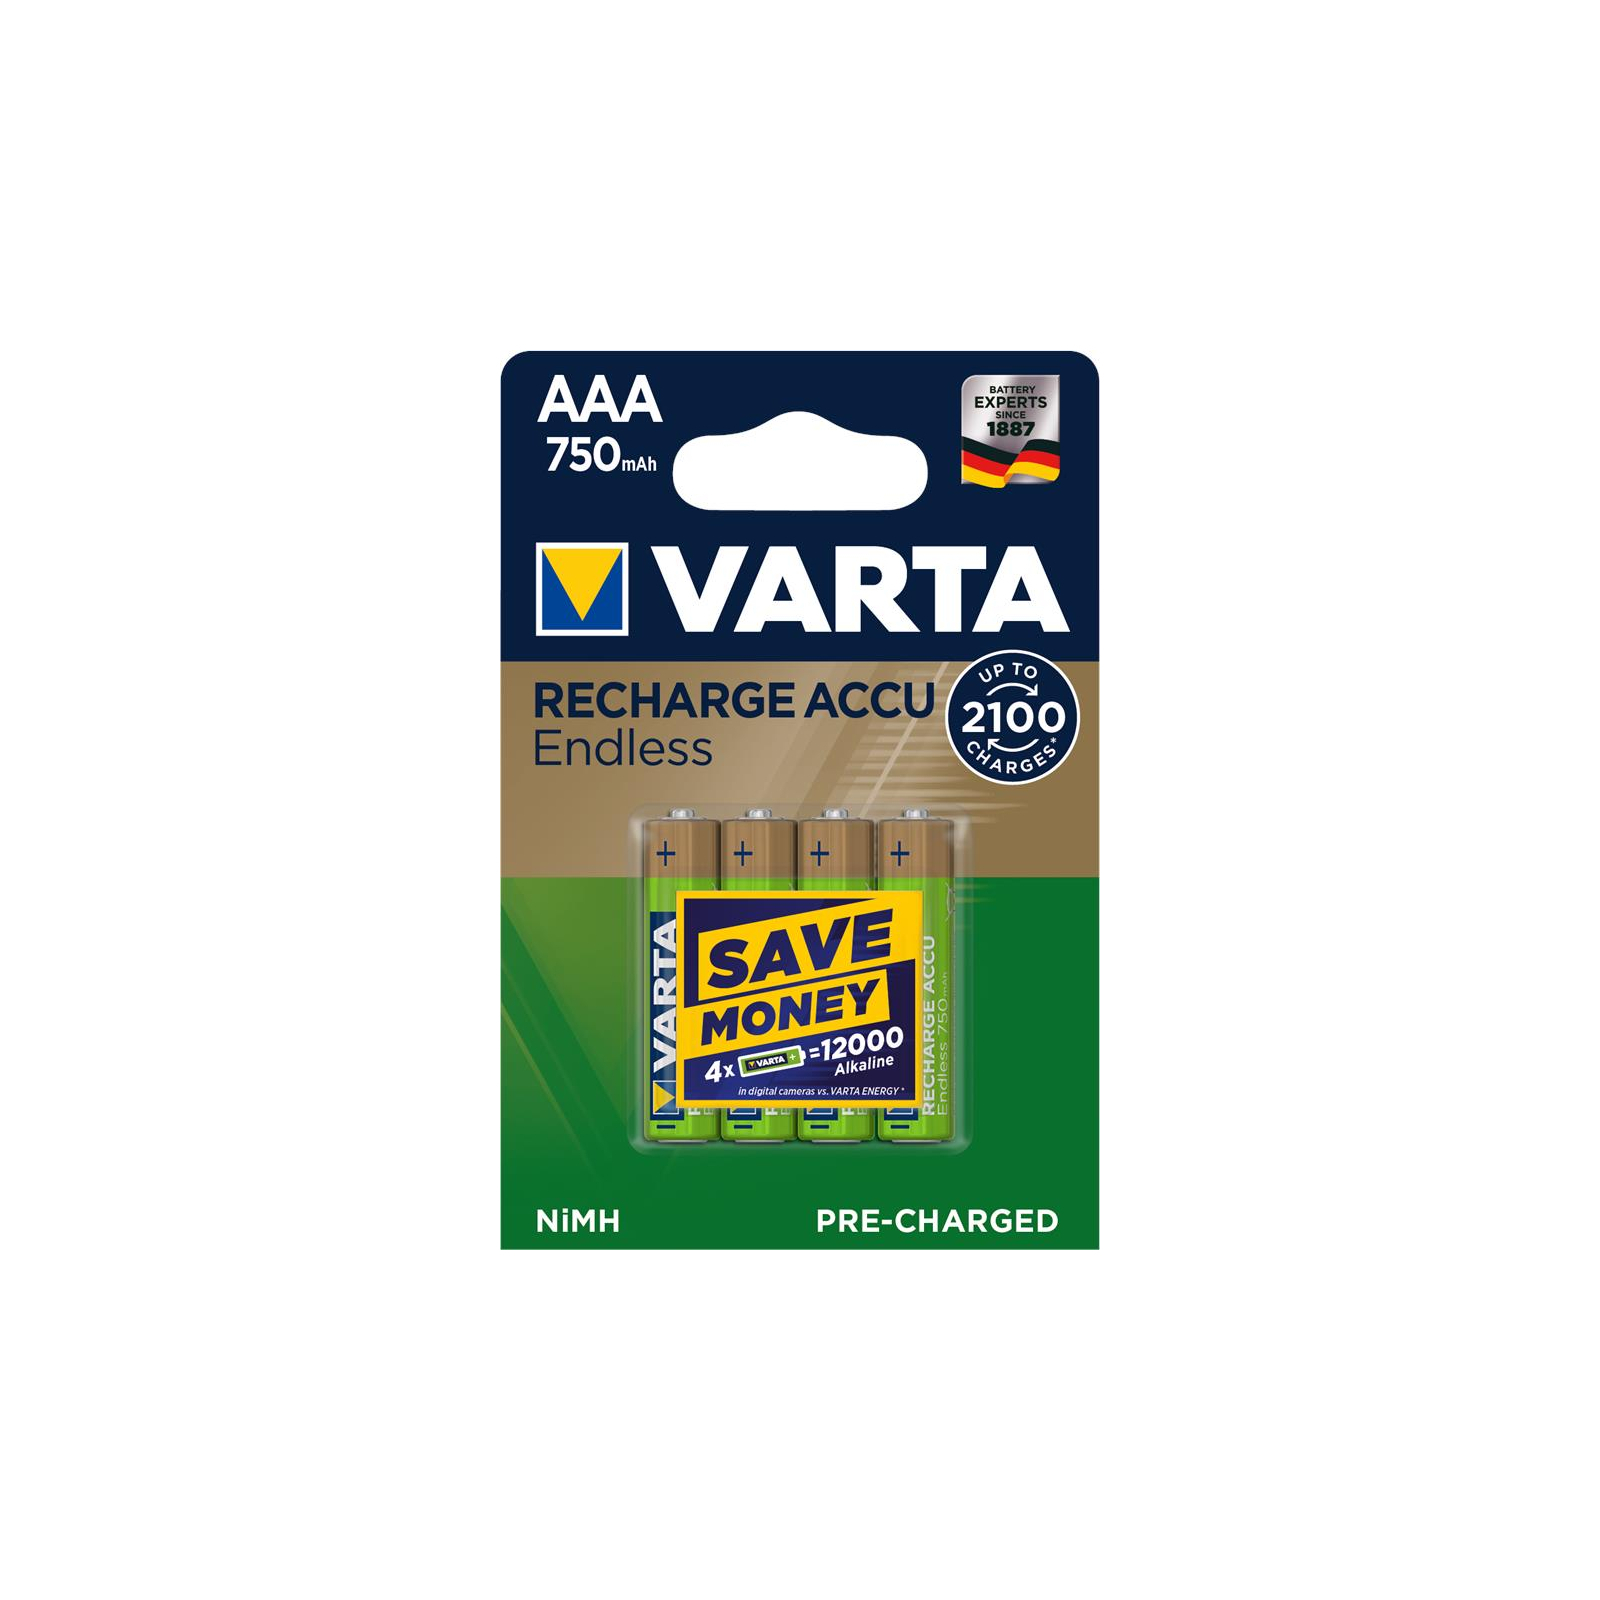 Аккумулятор Varta AAA Rechargeable Accu 750mAh * 4 (56673101404)